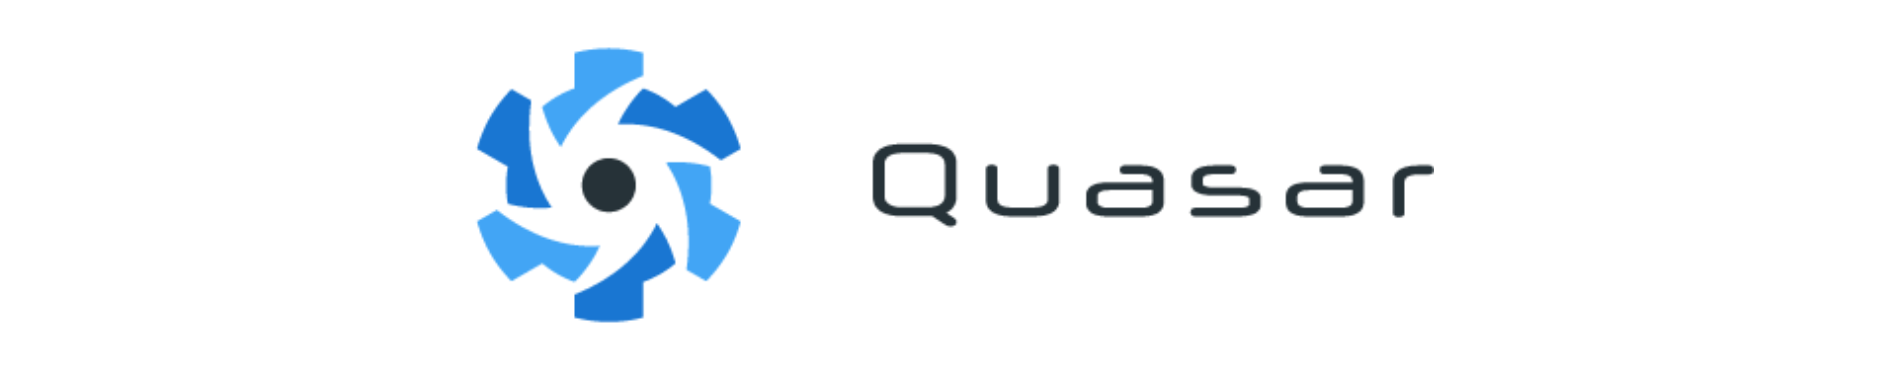 Quasar Framework is powered by Vue.js